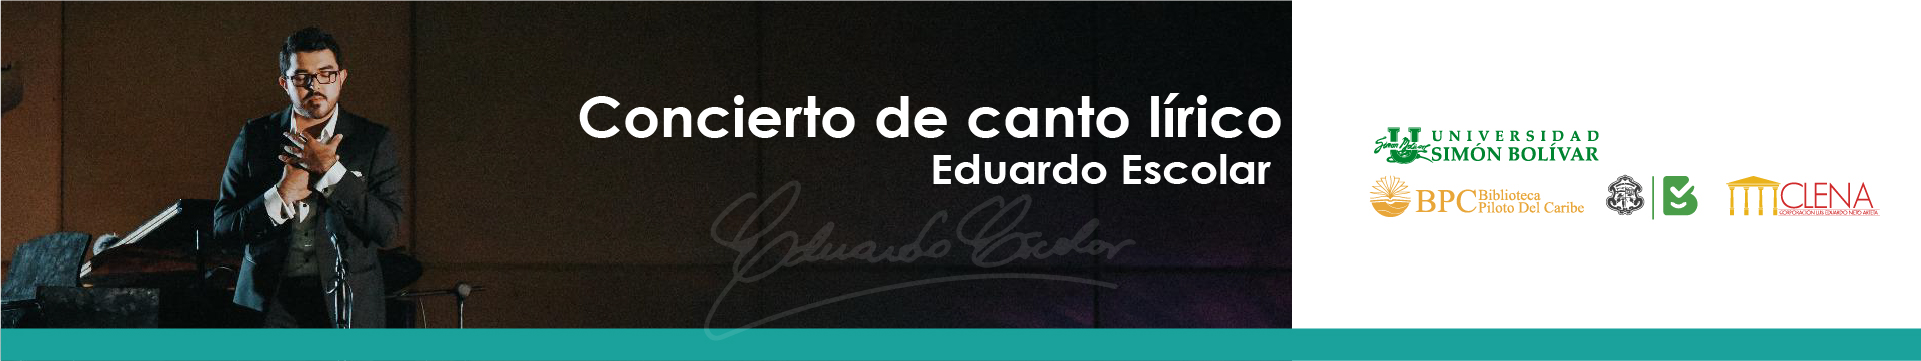 Concierto Eduardo Escolar - ¿Cuál Es El Plan?